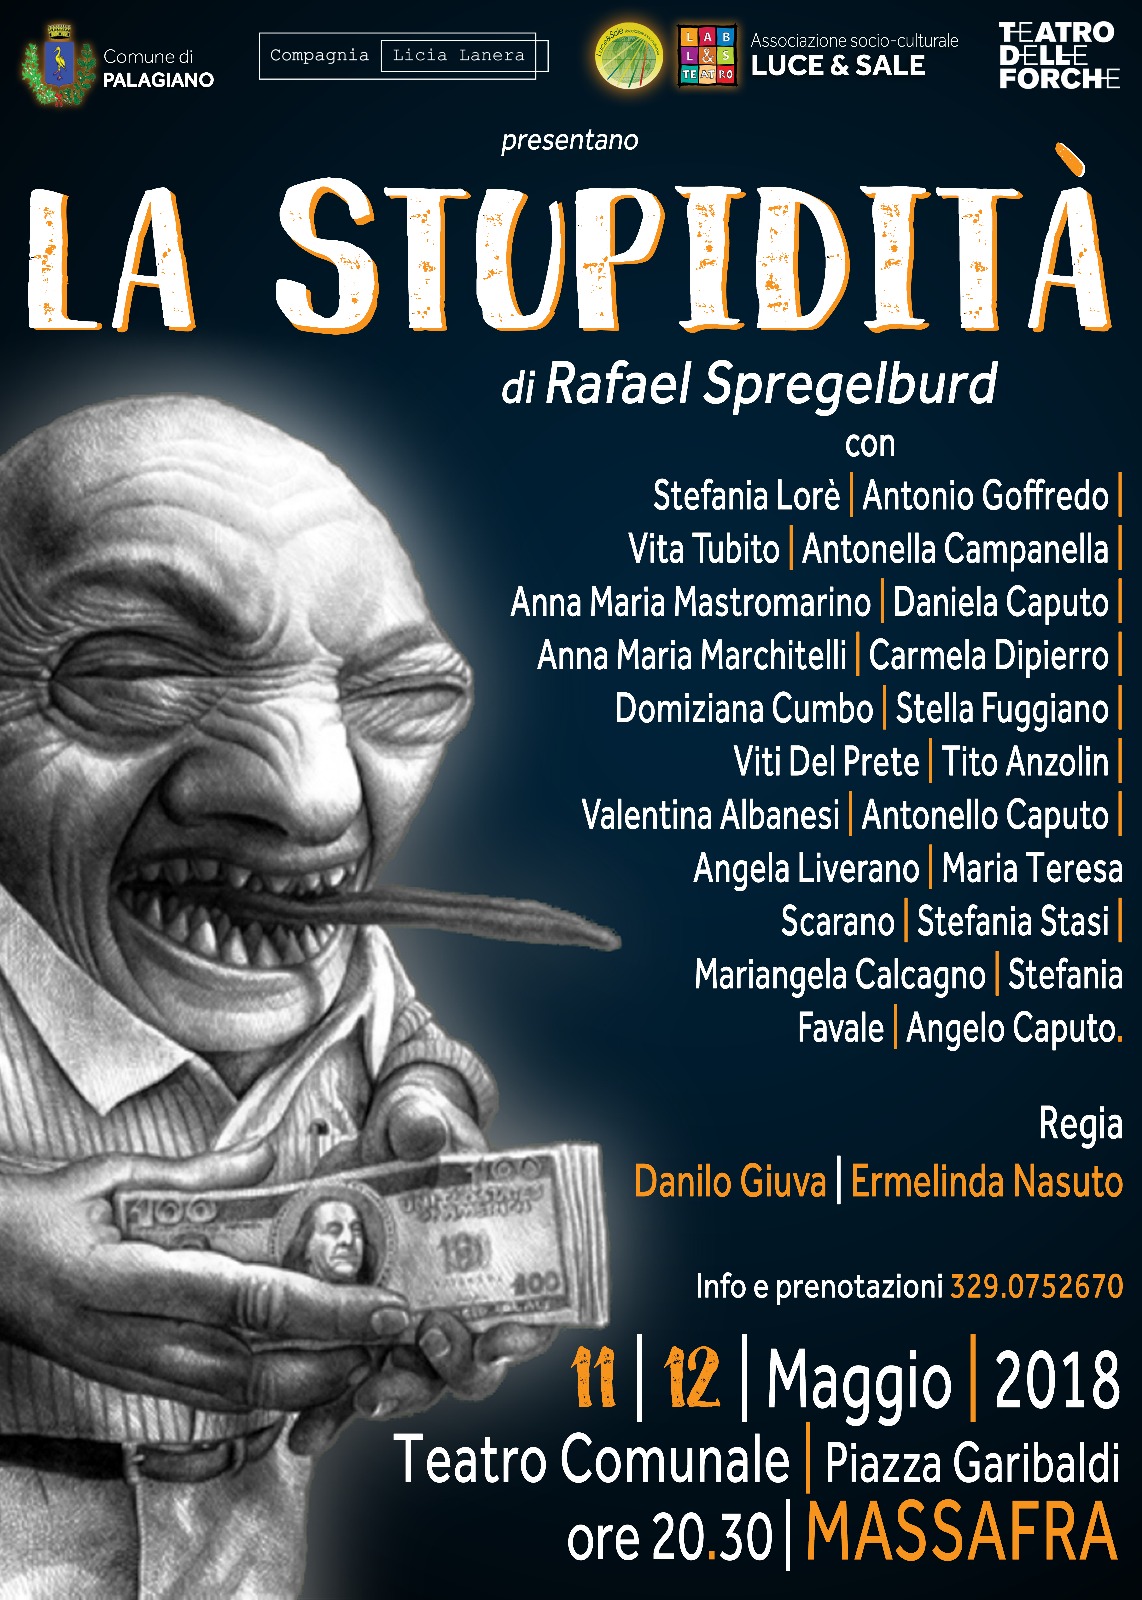 Venerdì 11 e sabato 12 maggio dalle 20.30, al Teatro Comunale in Piazza Garibaldi a Massafra, va in scena “LA STUPIDITÀ”